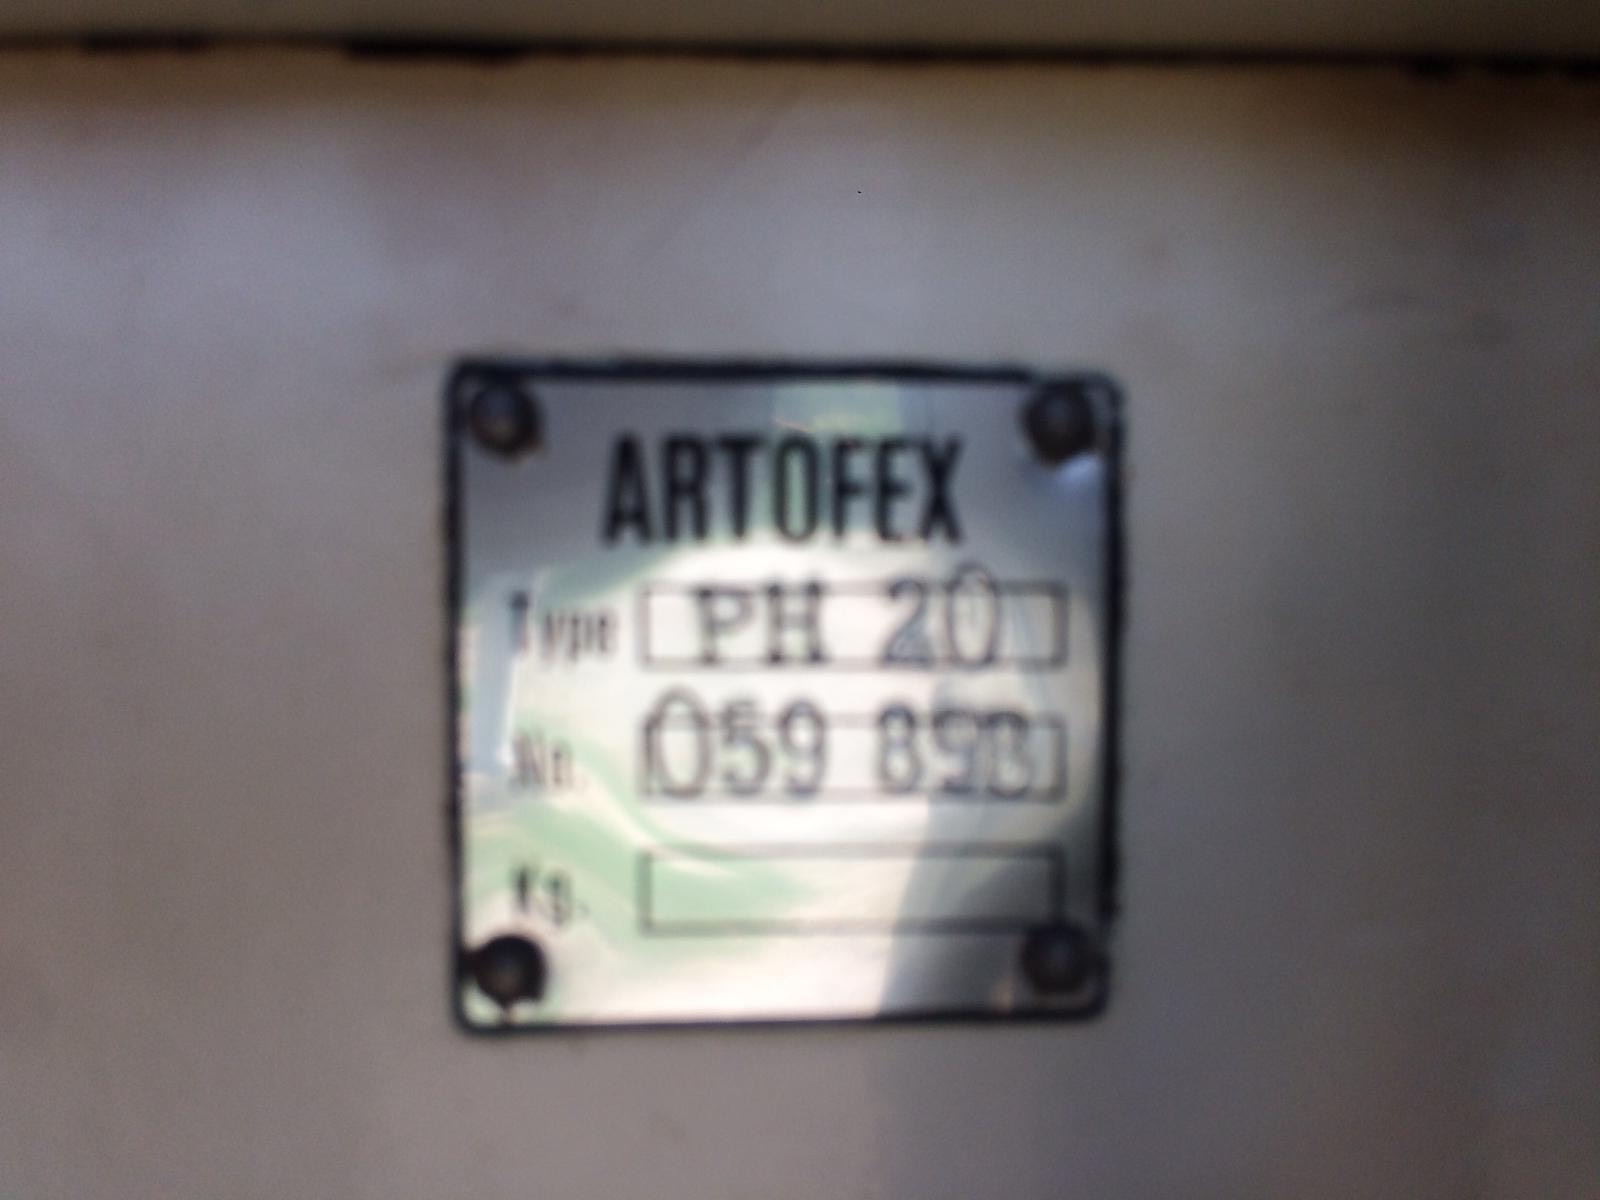 Artofex Ph 20 double arm mixer